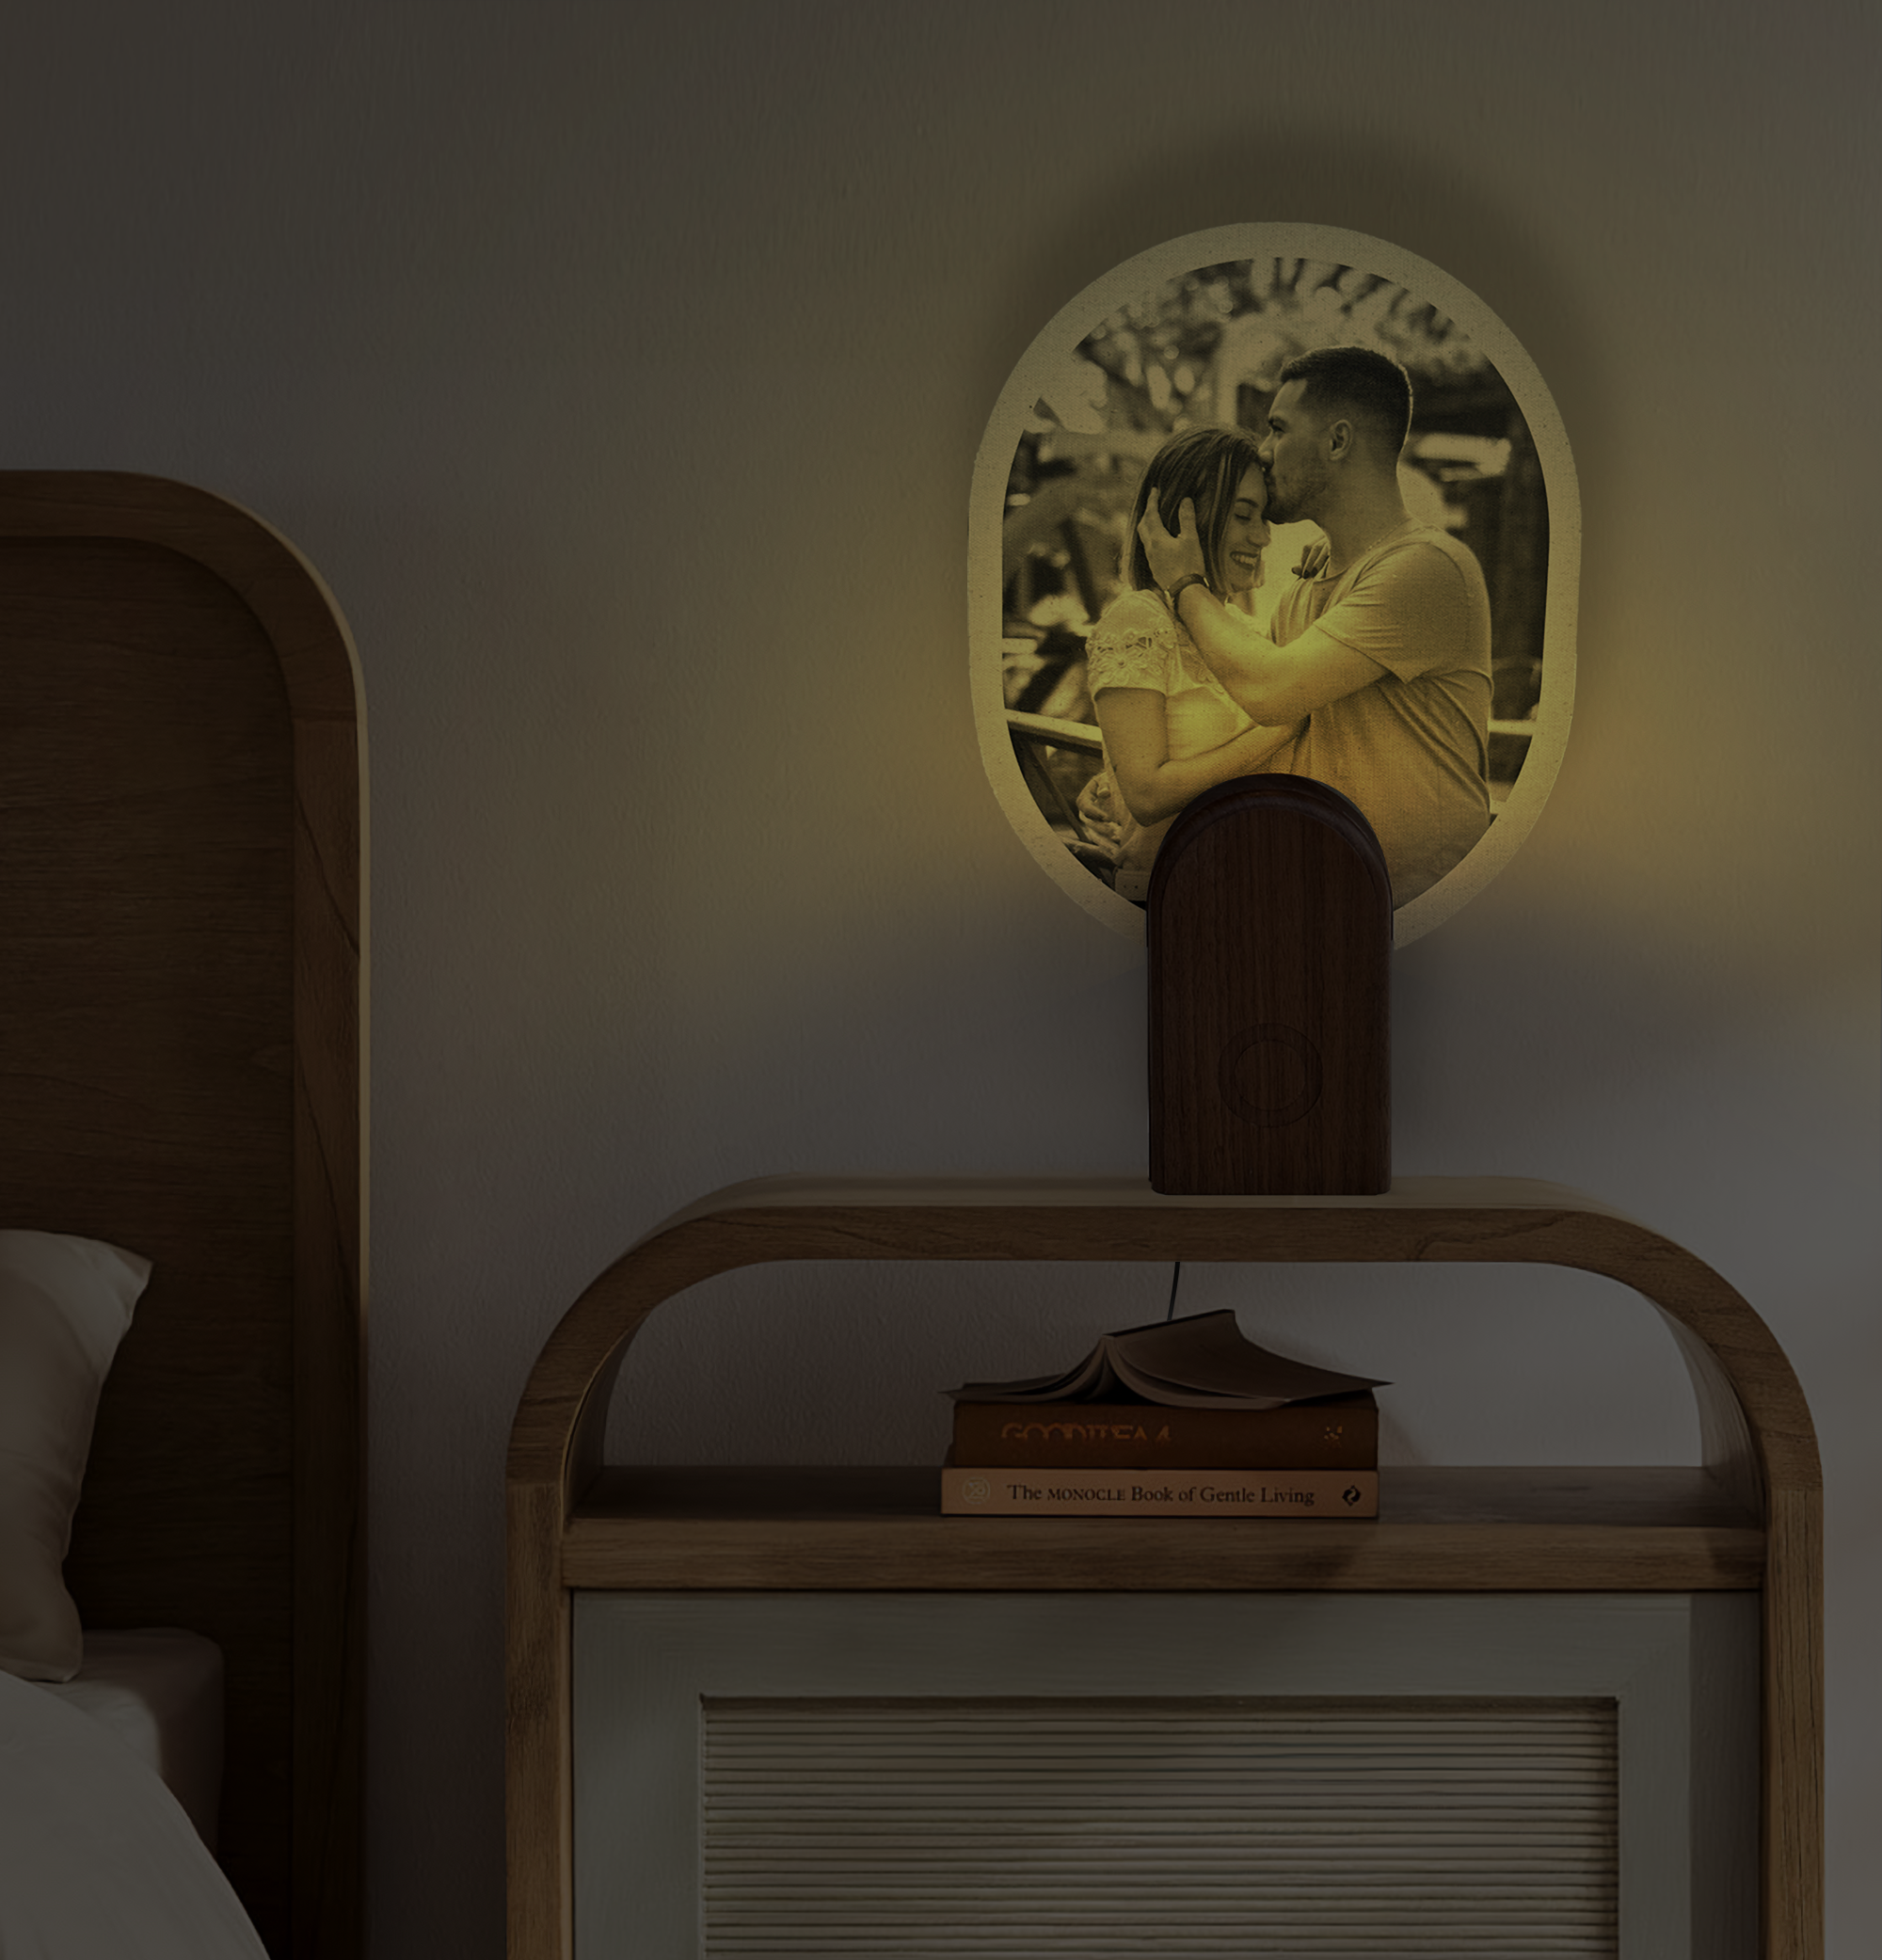 Photo night light on in a dark bedroom